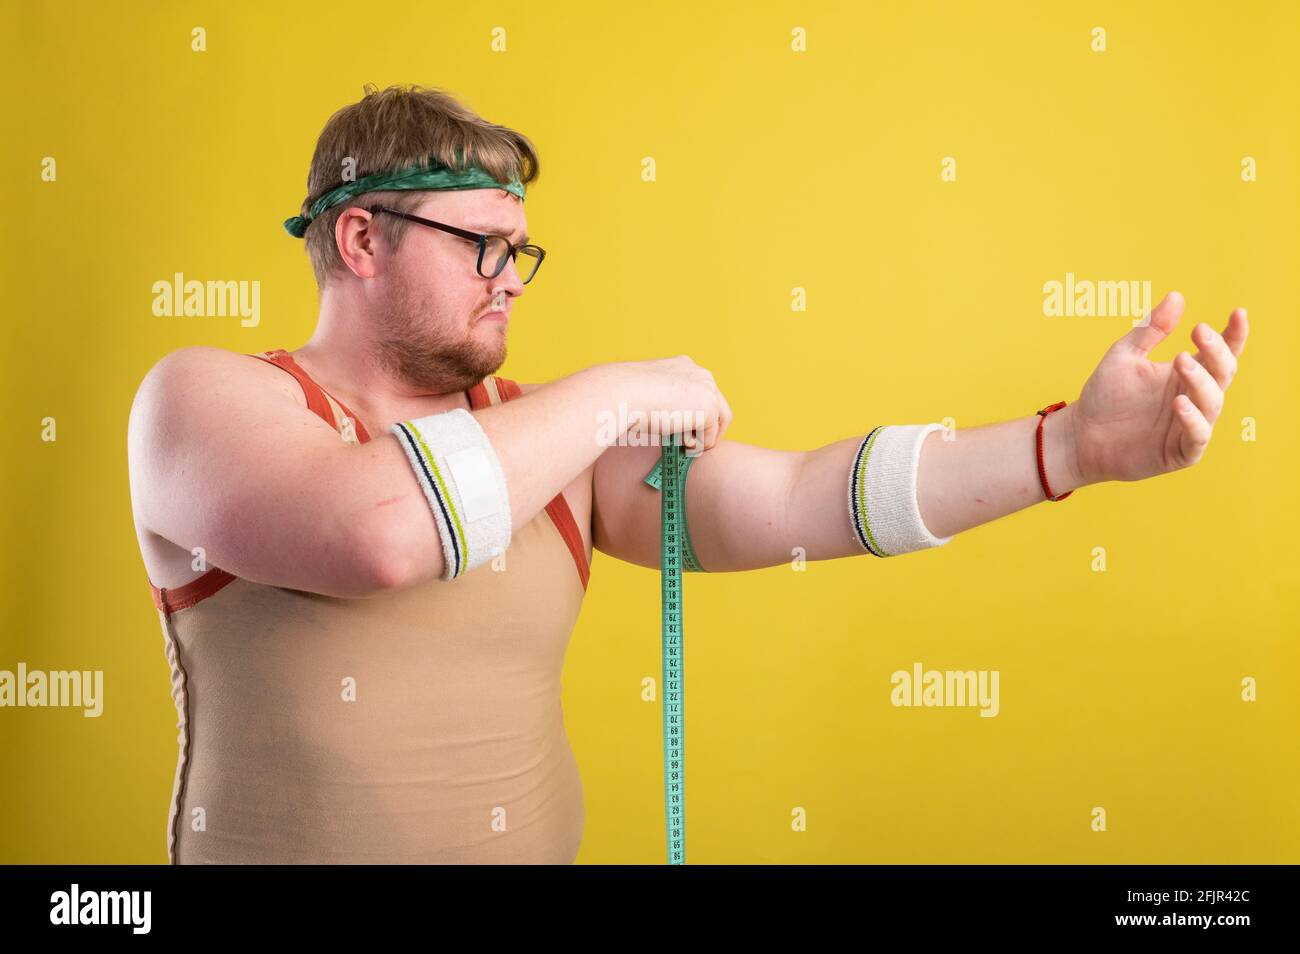 Lustige fette Mann in Sportbekleidung misst das Volumen seiner Arm  Stockfotografie - Alamy